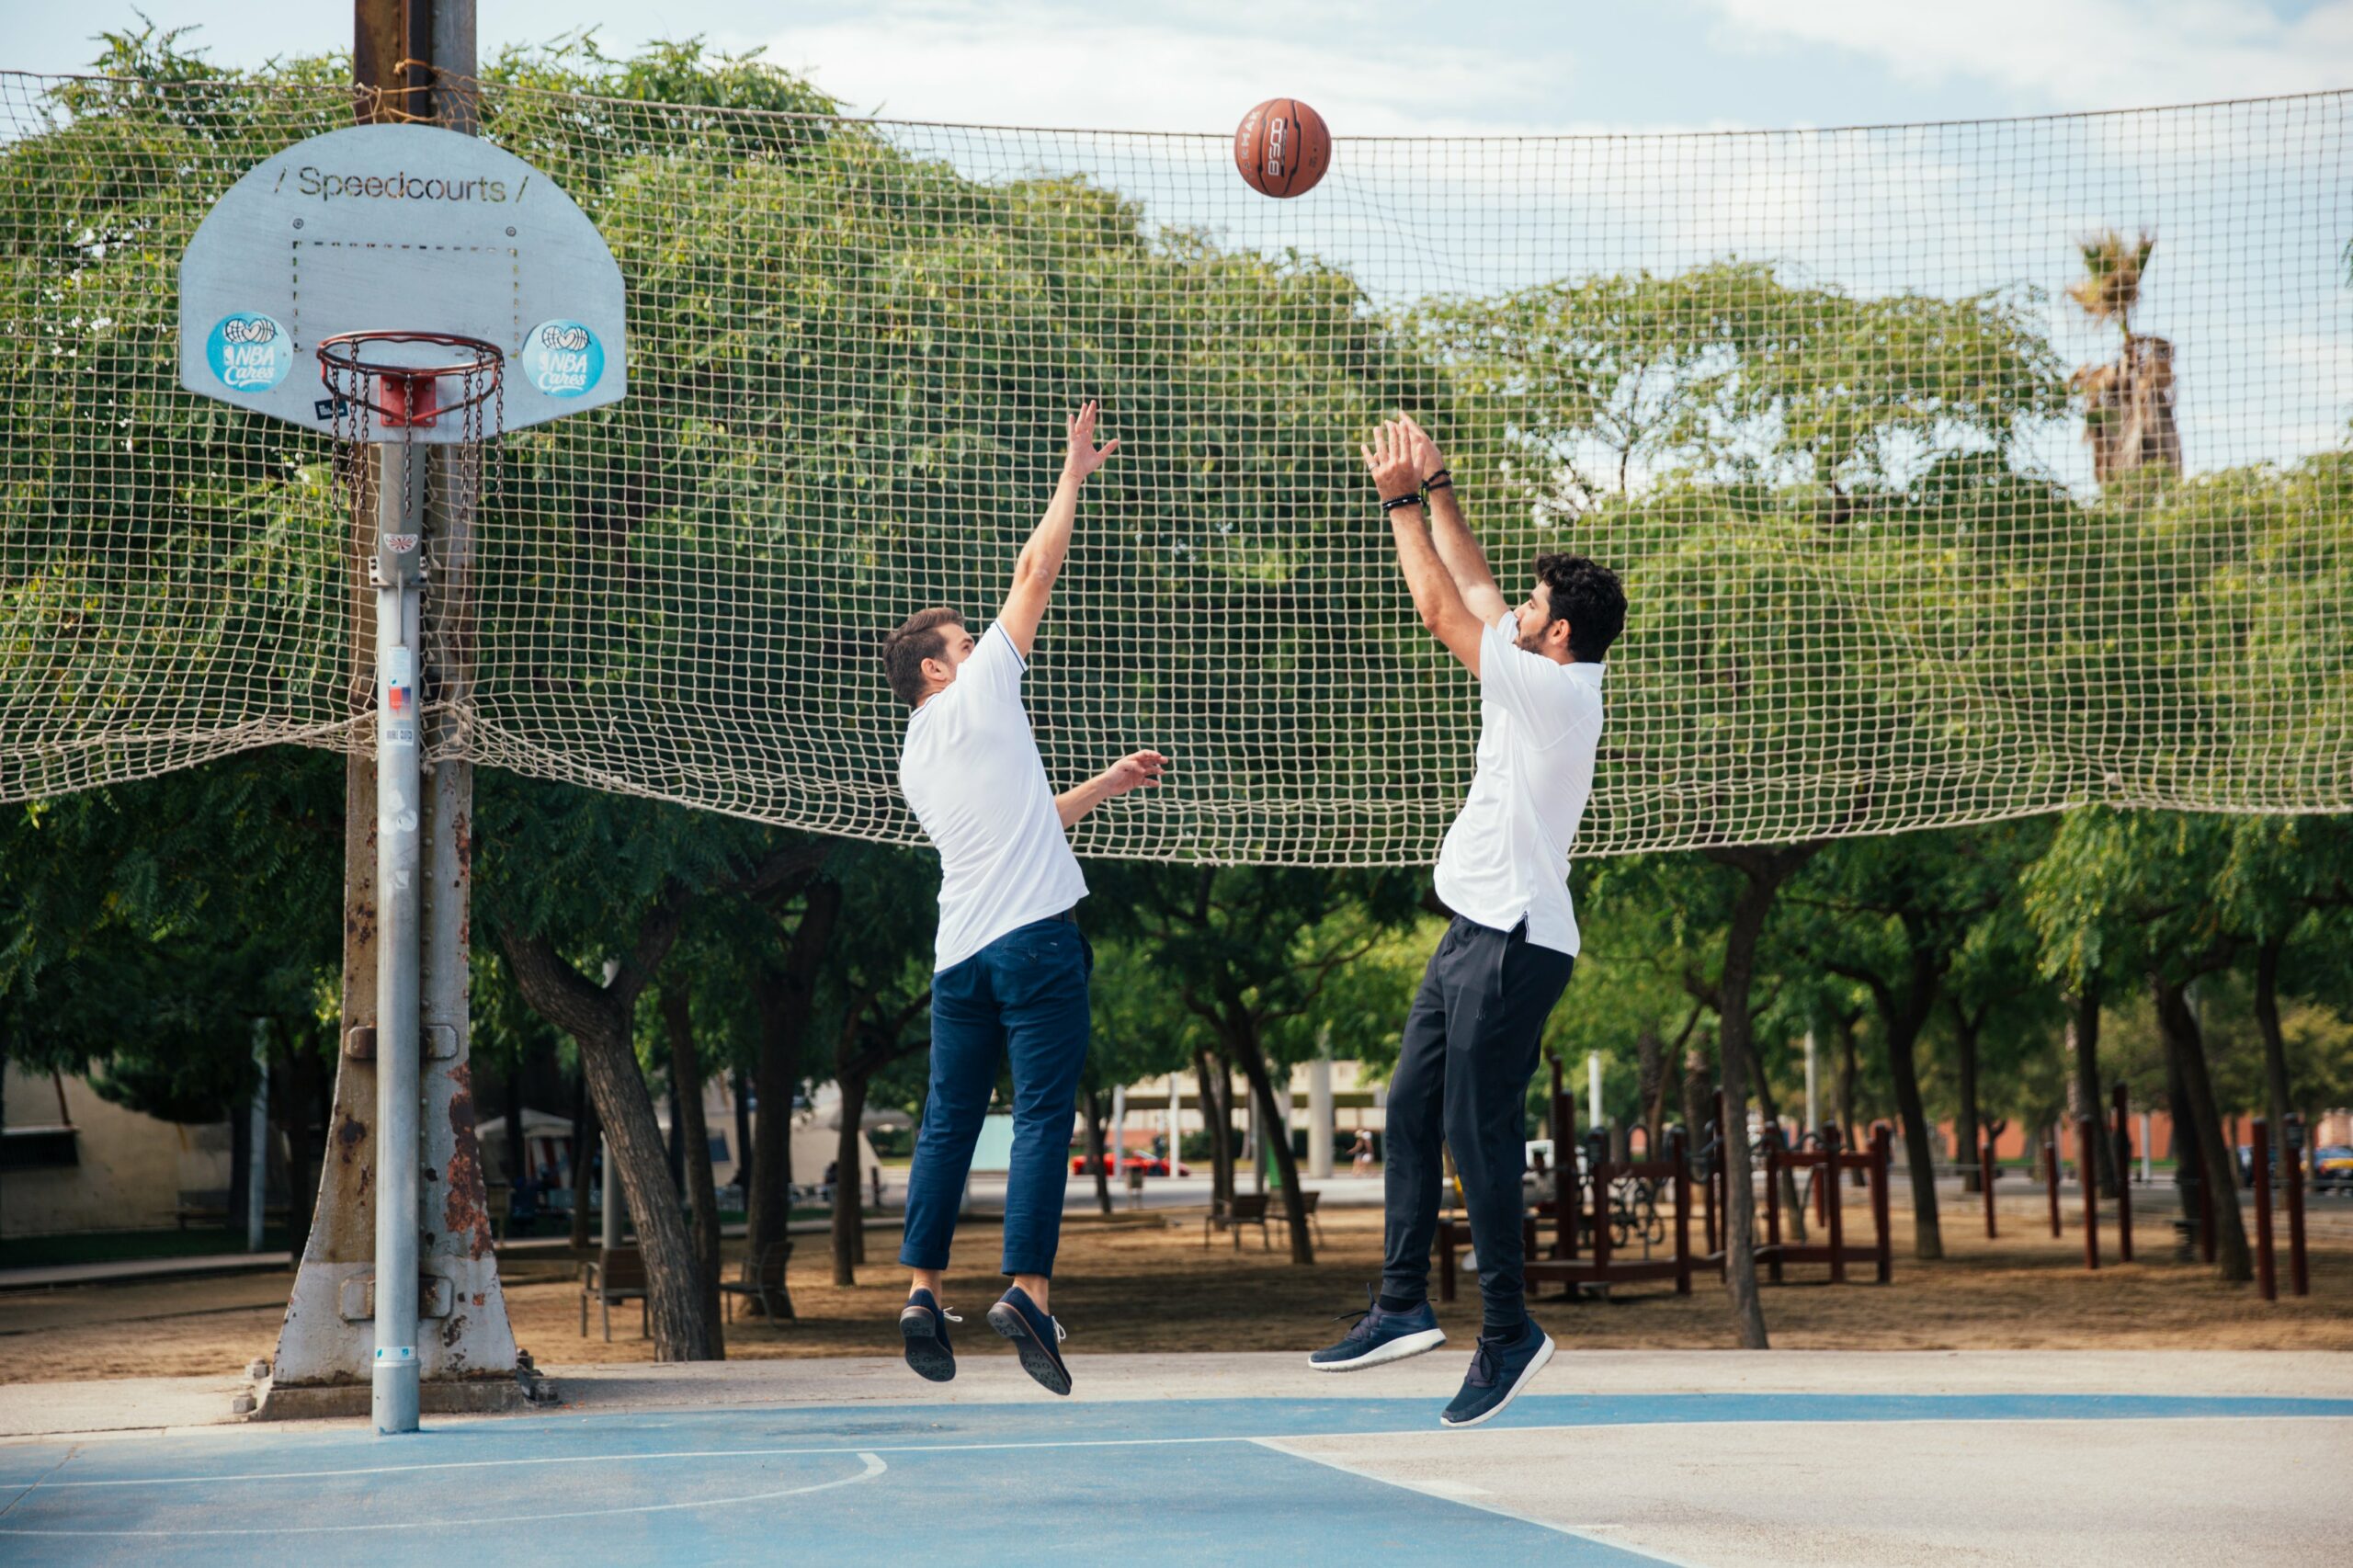 Zu den Risiken einer Sehnenscheidenentzündung zu entwickeln, gehören einige Sportarten wie Basketball